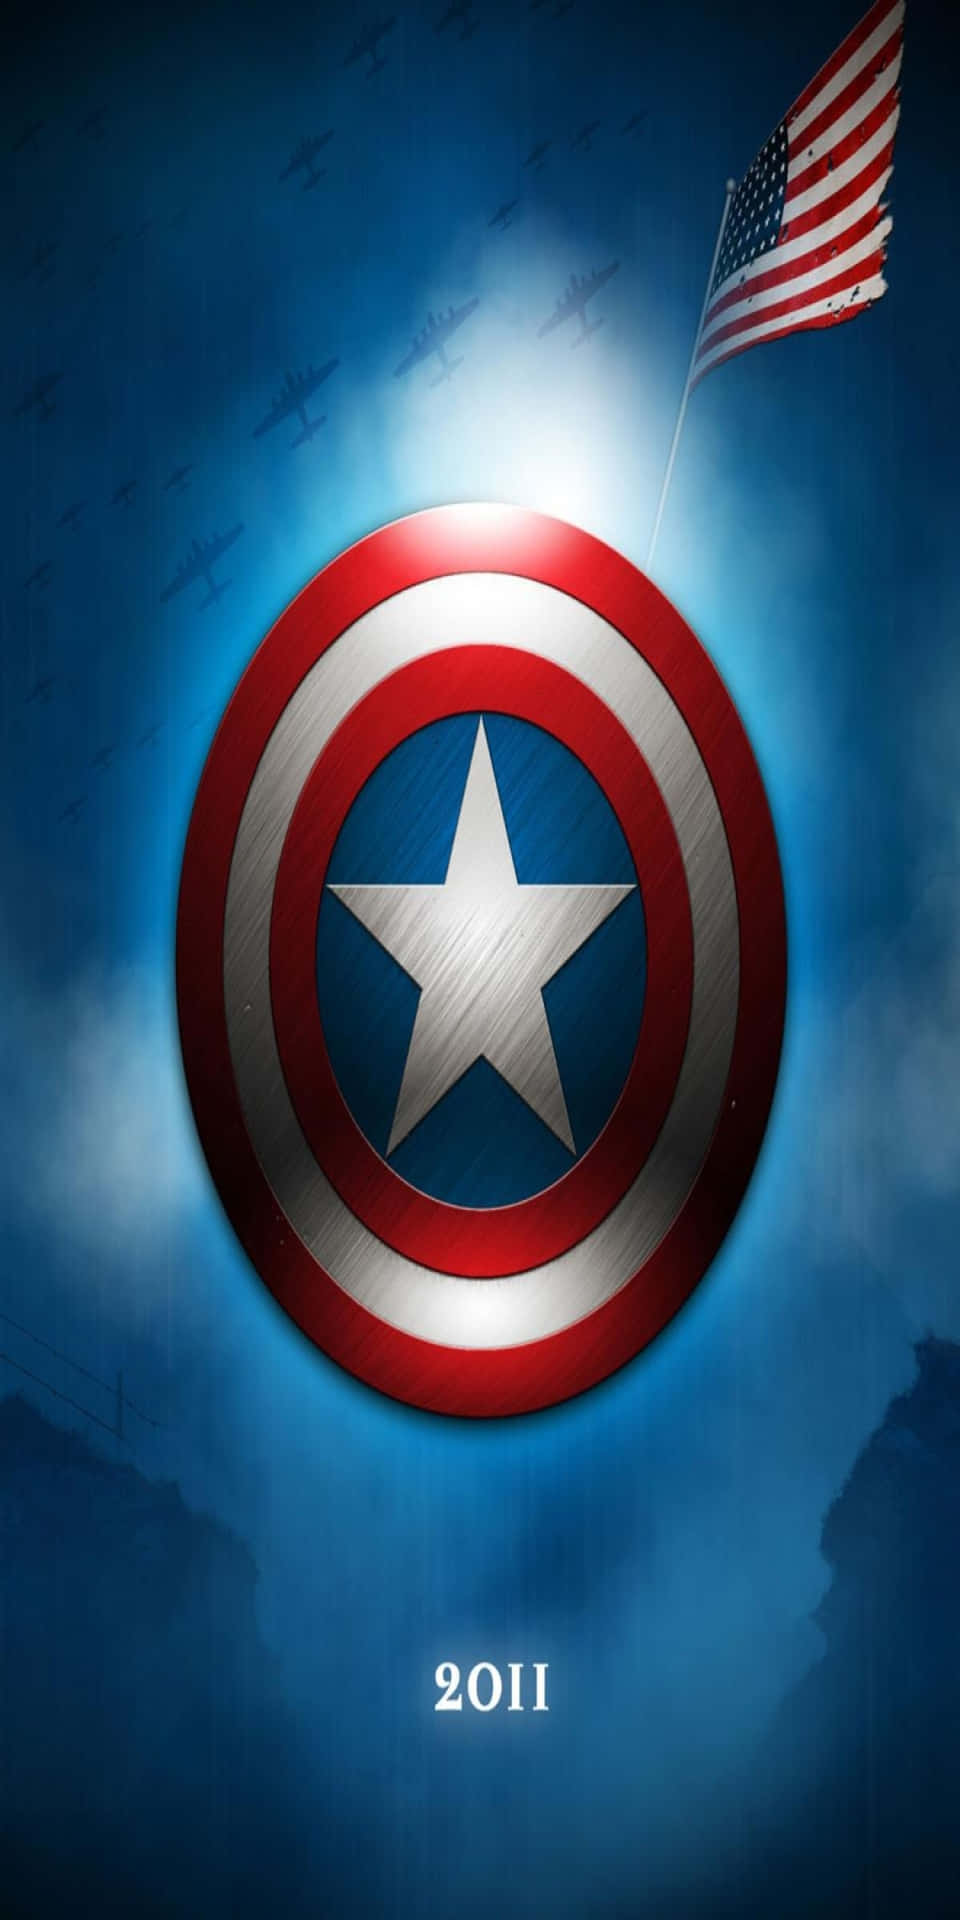 Pixel 3 Marvel Captain America skjold 2011 baggrund tapet